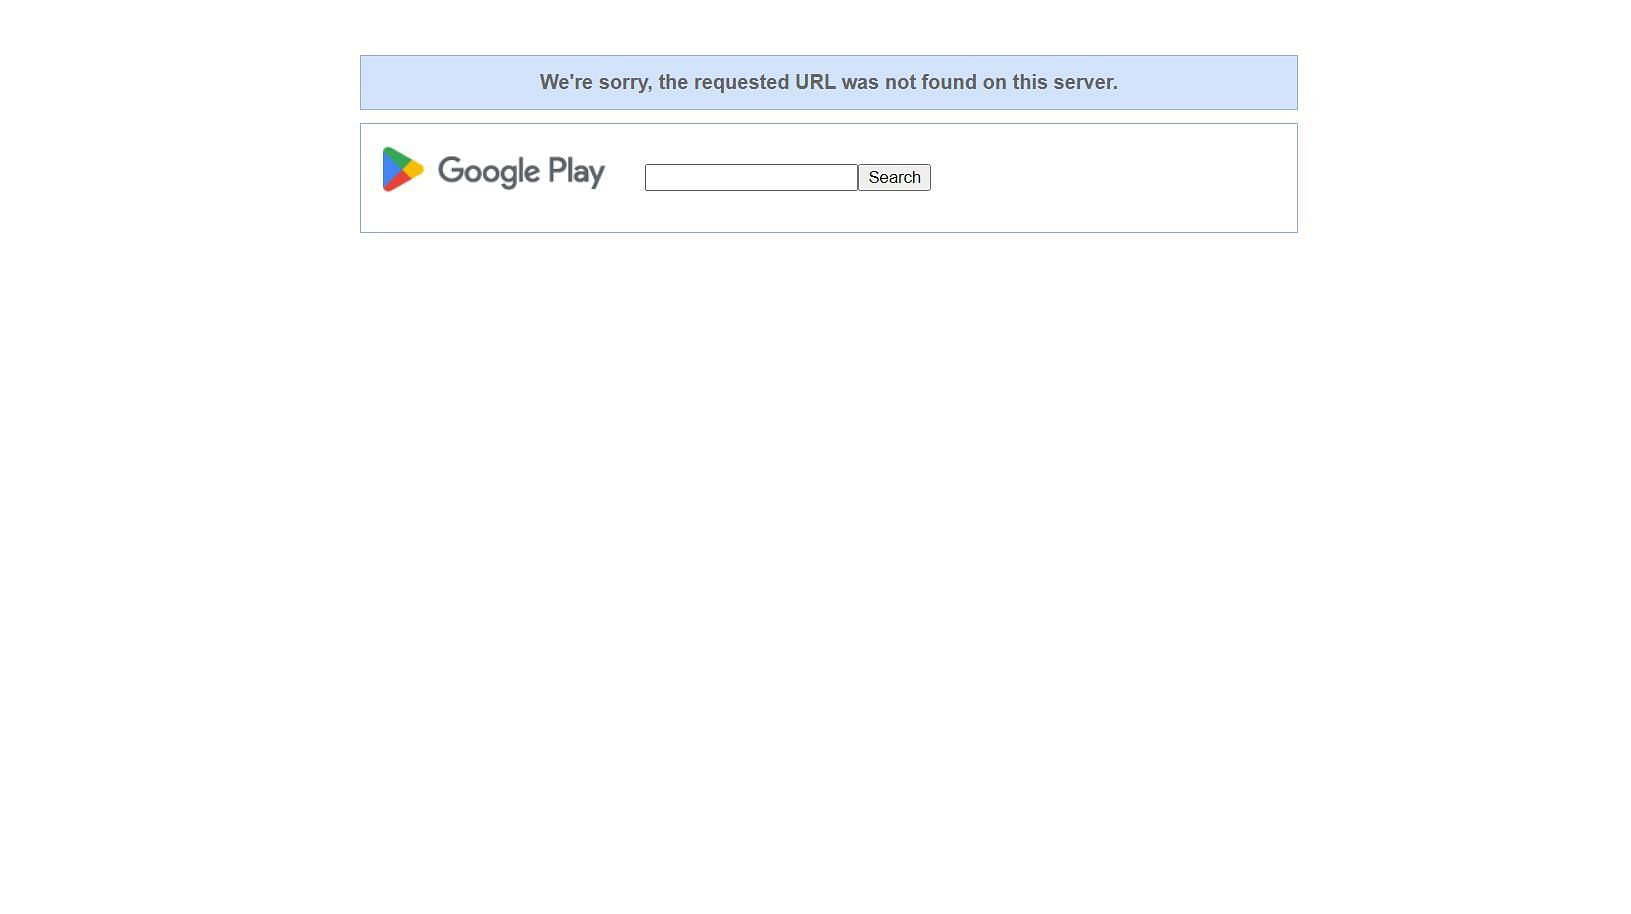 गूगल प्ले स्टोर से सिग्मा बैटल रॉयल गेम को ऑथेंटिकेशन नहीं मिला है